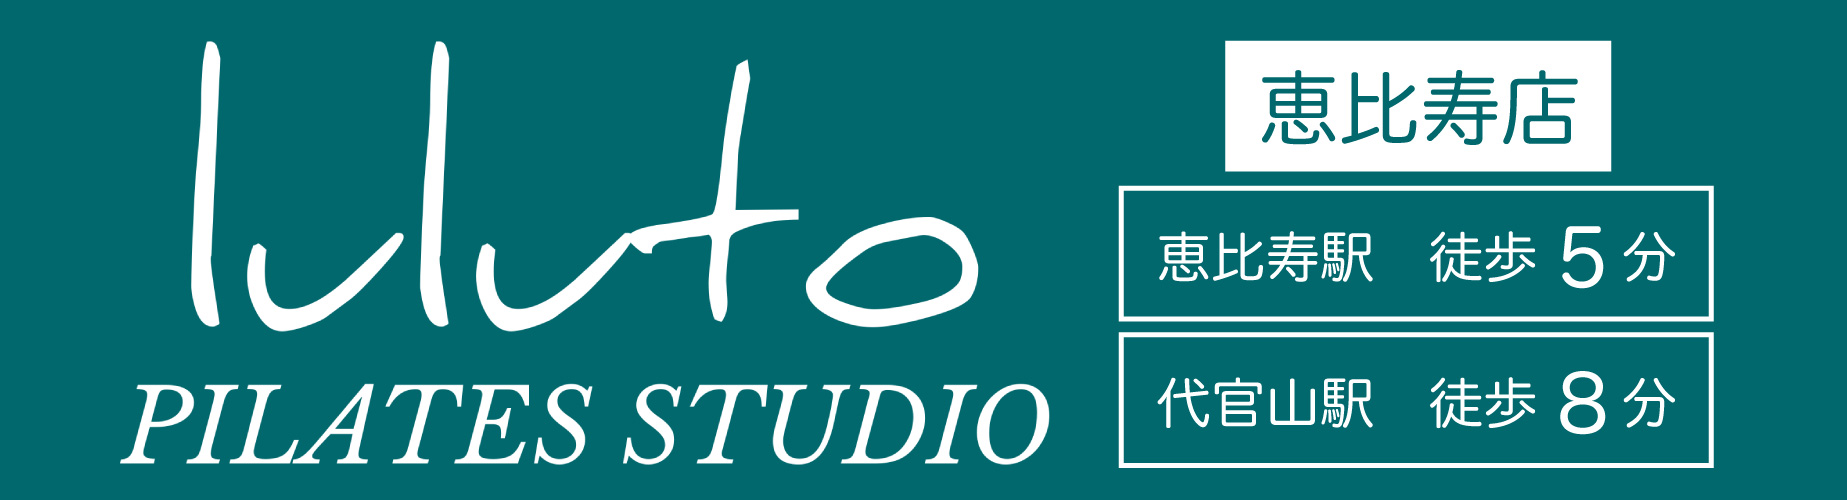 ピラティススタジオ『ルルト』恵比寿店